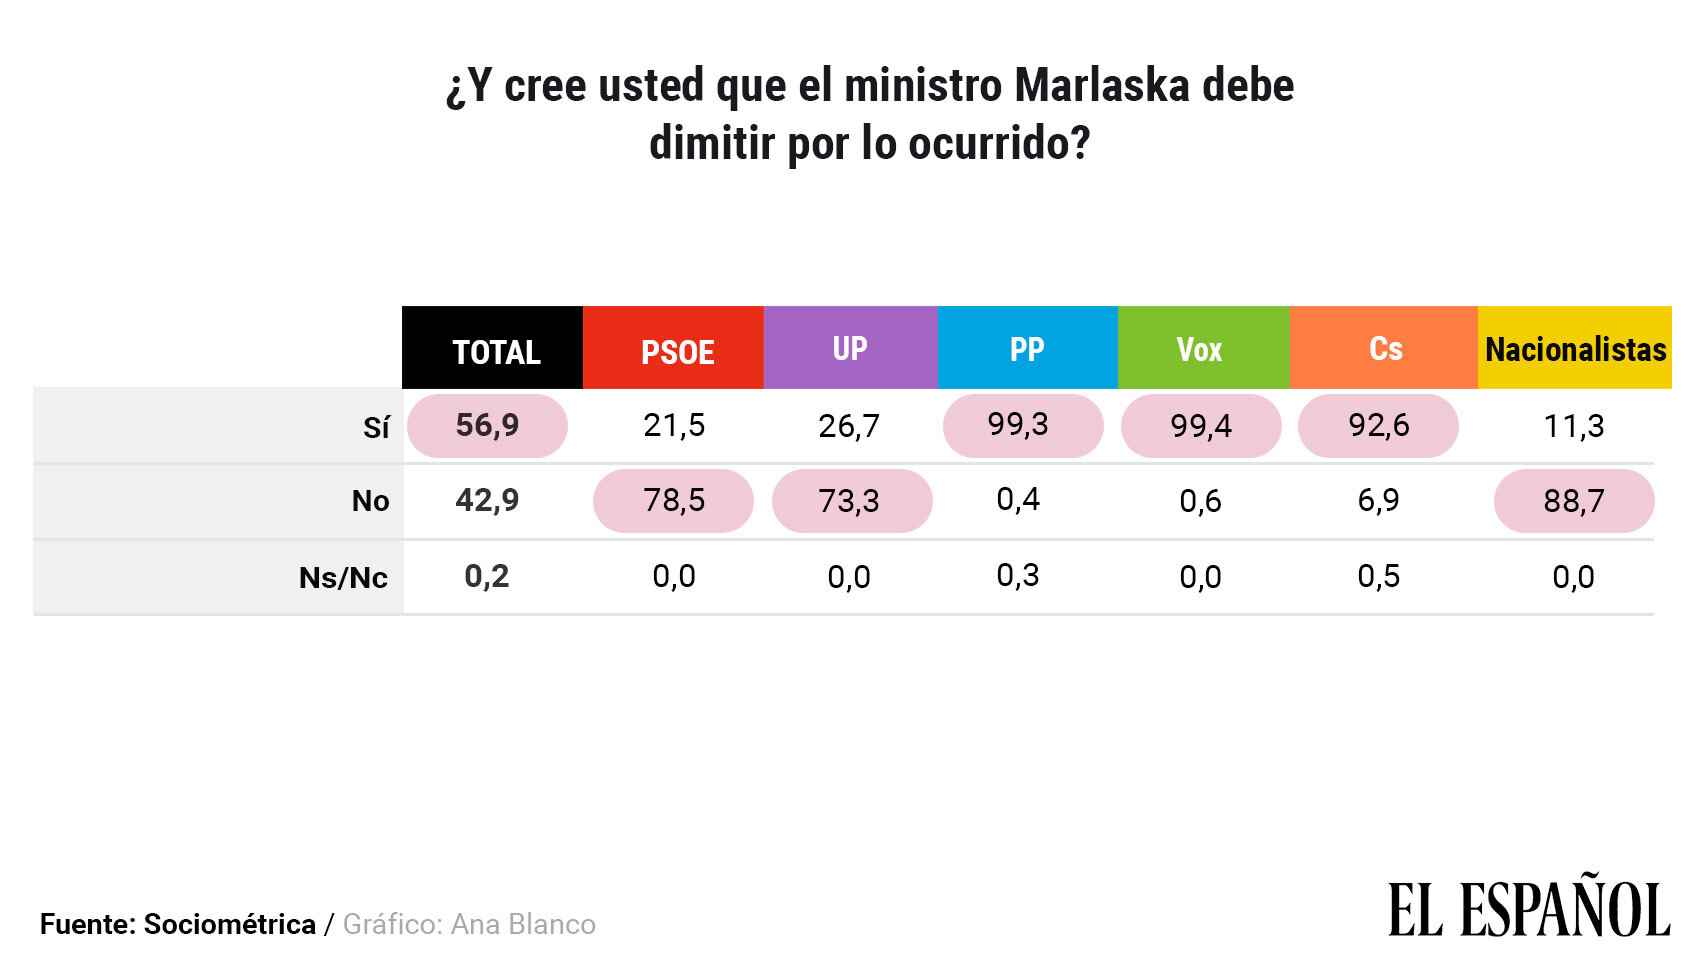 Datos disgregados por partidos sobre la opinión acerca de la dimisión de Marlaska.